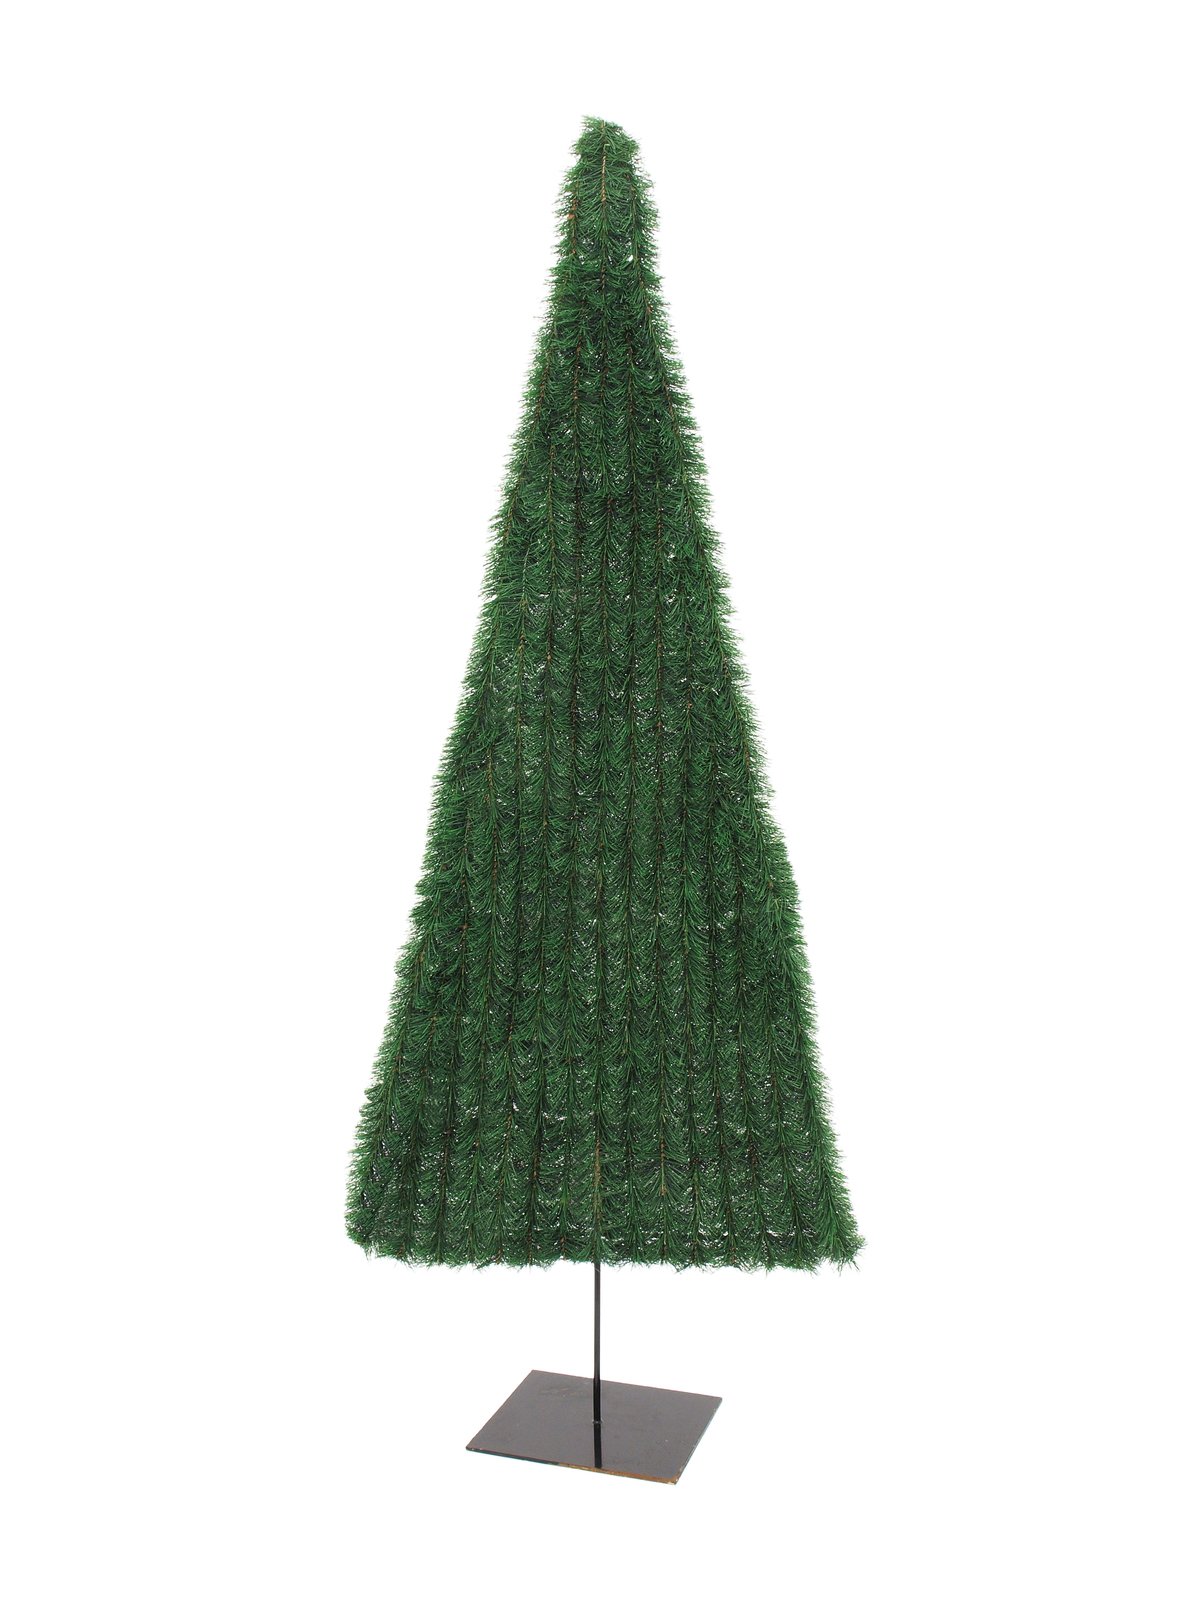 Vánoční stromek plochý, tmavě zelený 180cm